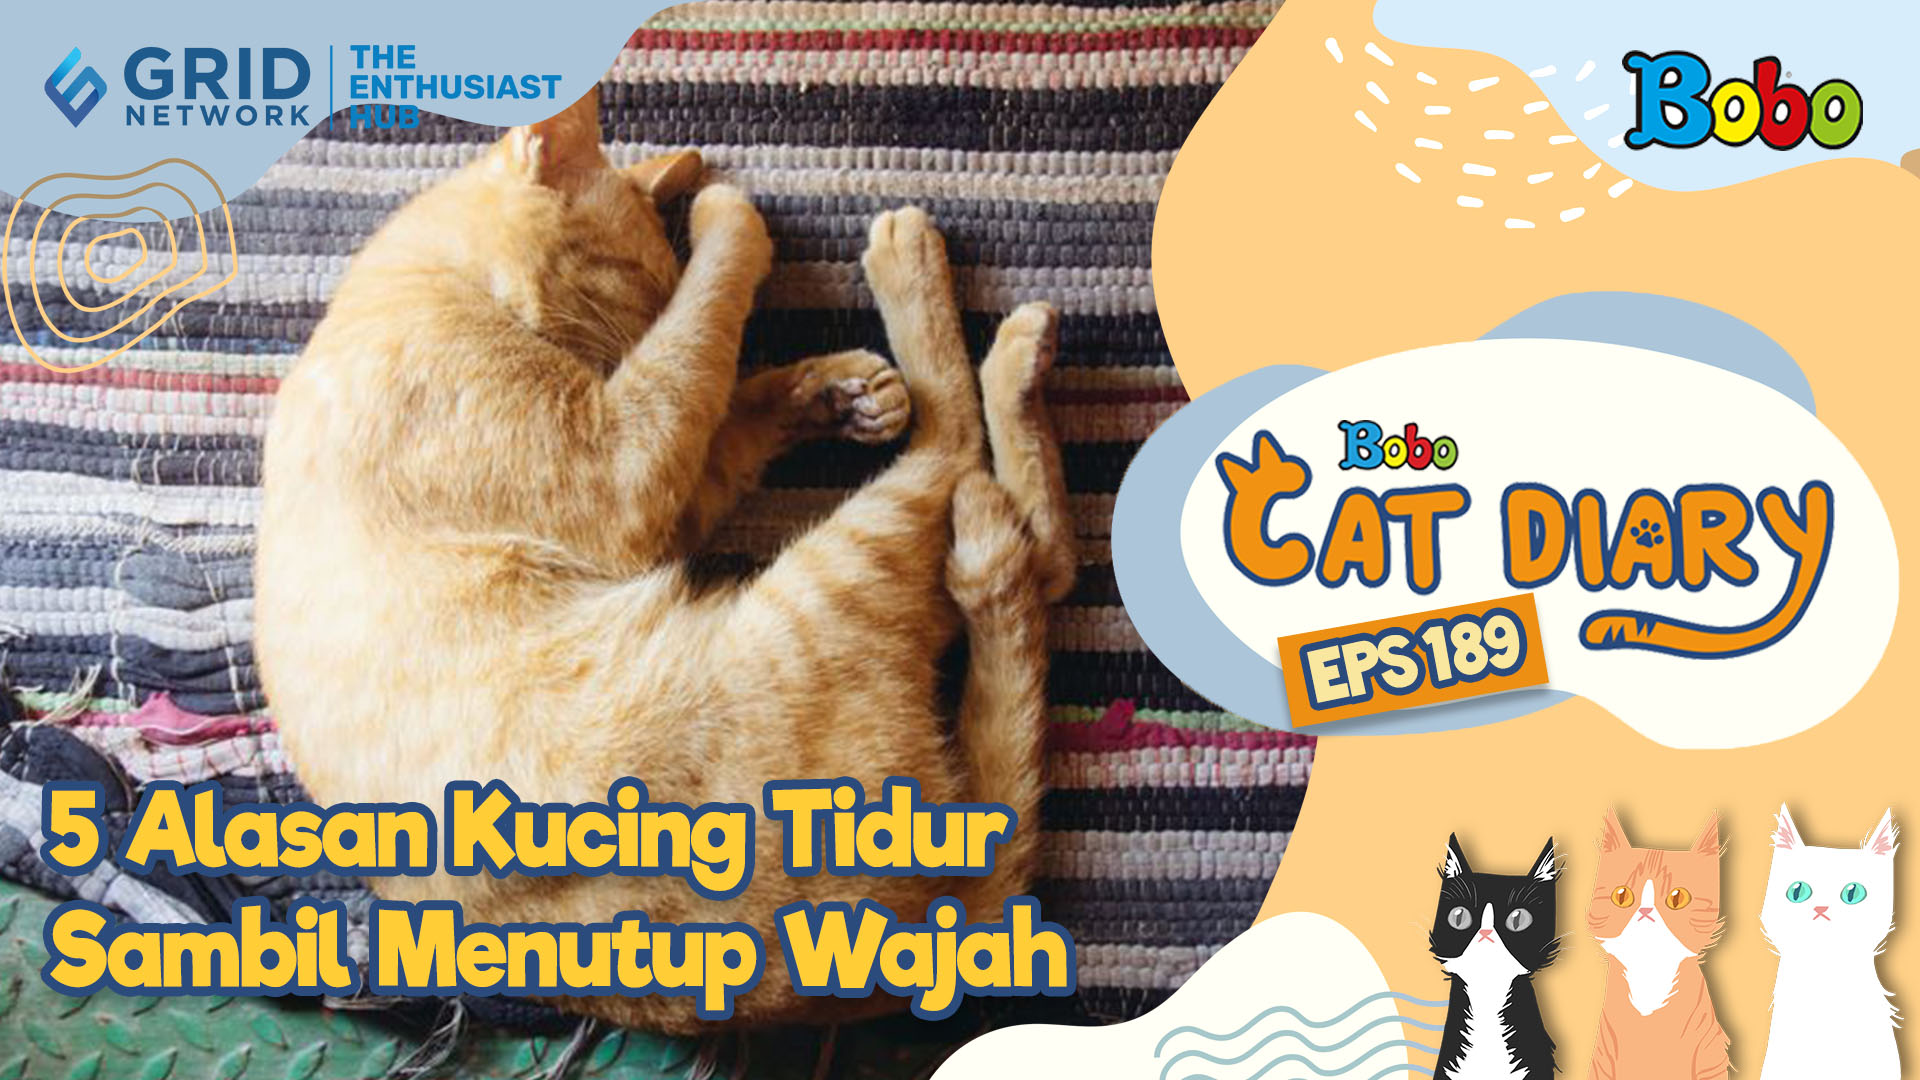 Kucing Lucu - 5 Alasan Kucing Tidur Sambil Menutup Wajah - Bobo Cat Diary Eps 189